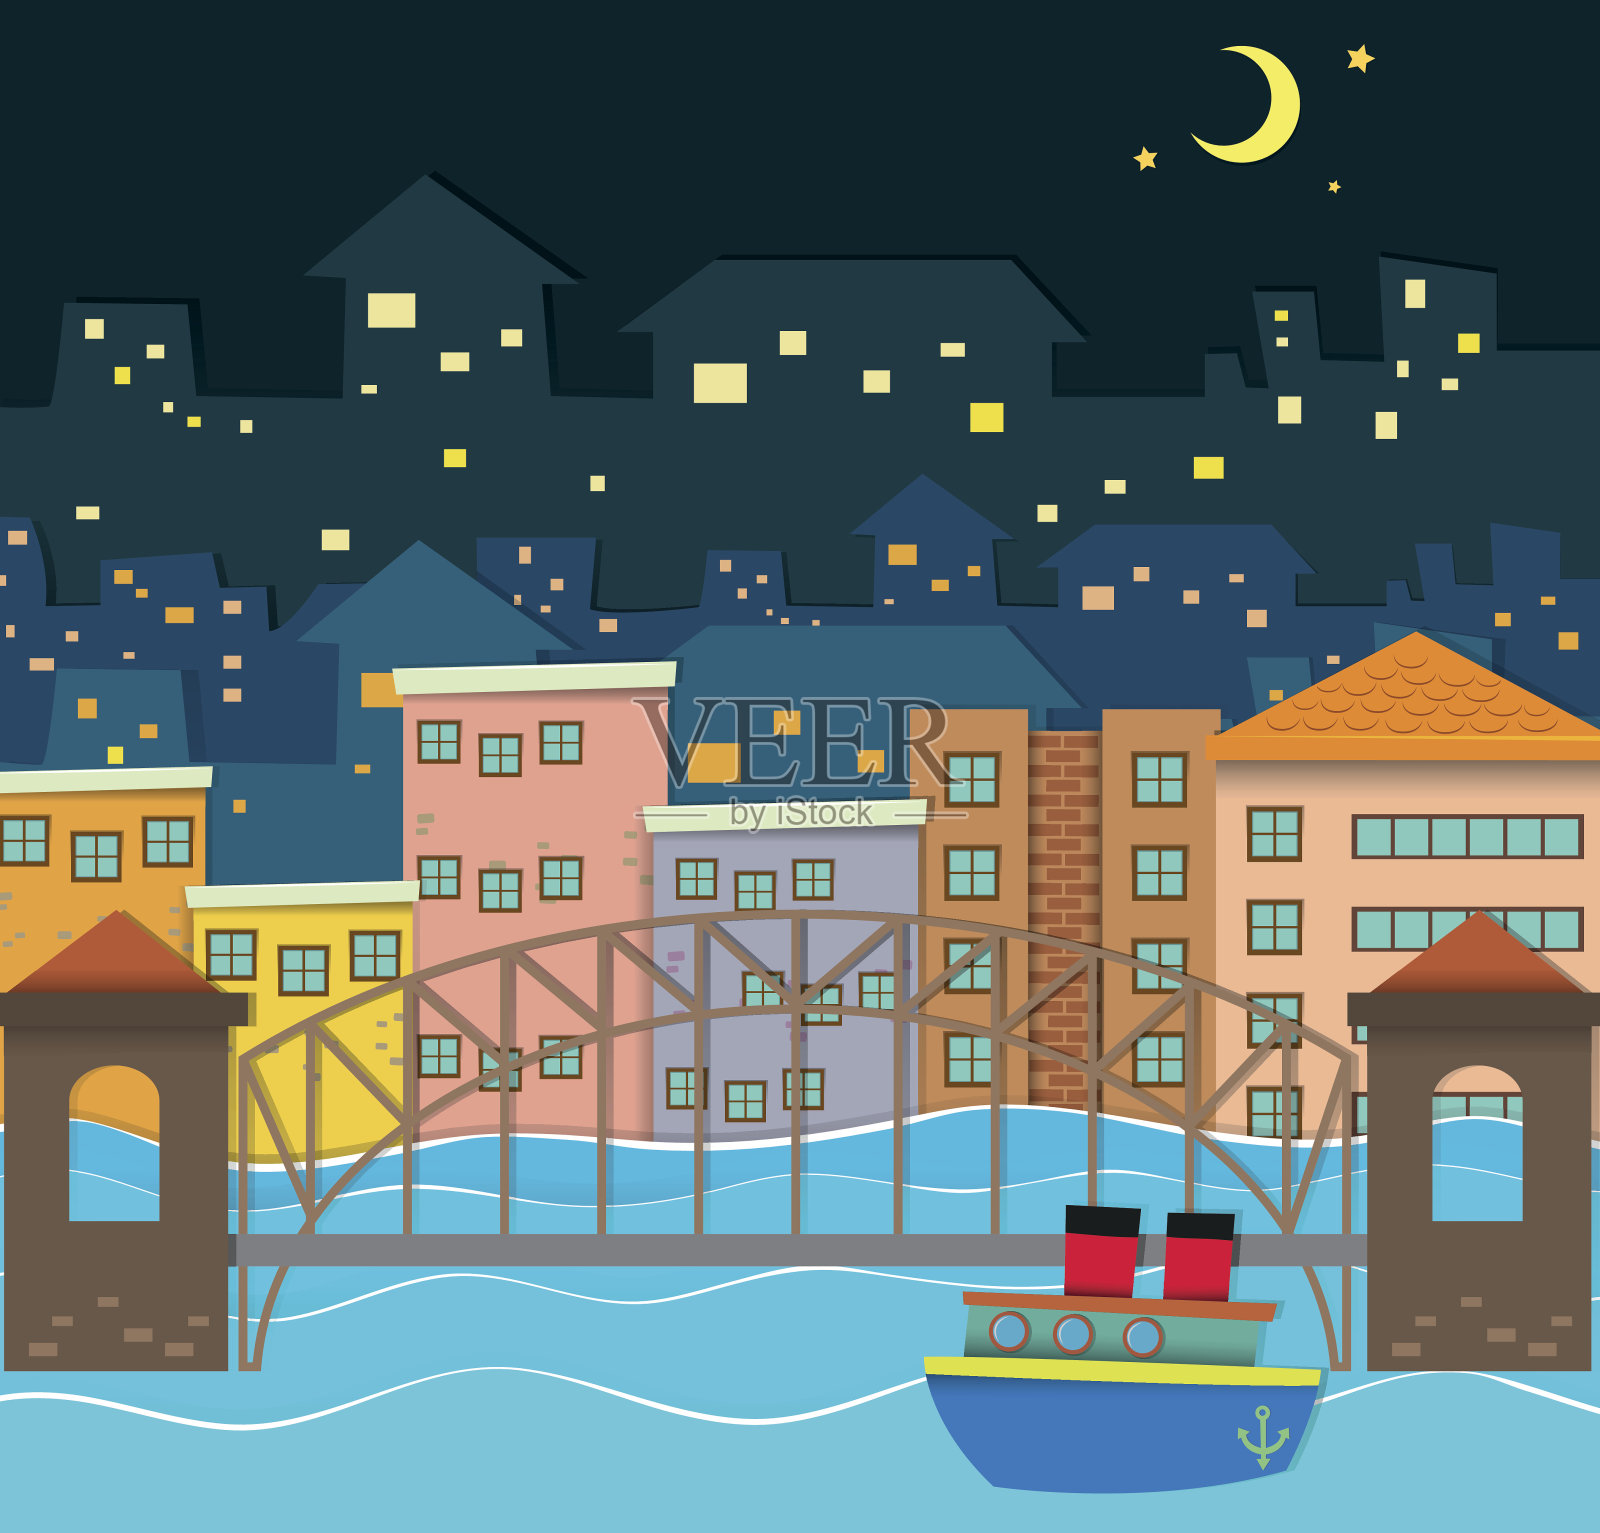 桥上河景夜景插画图片素材